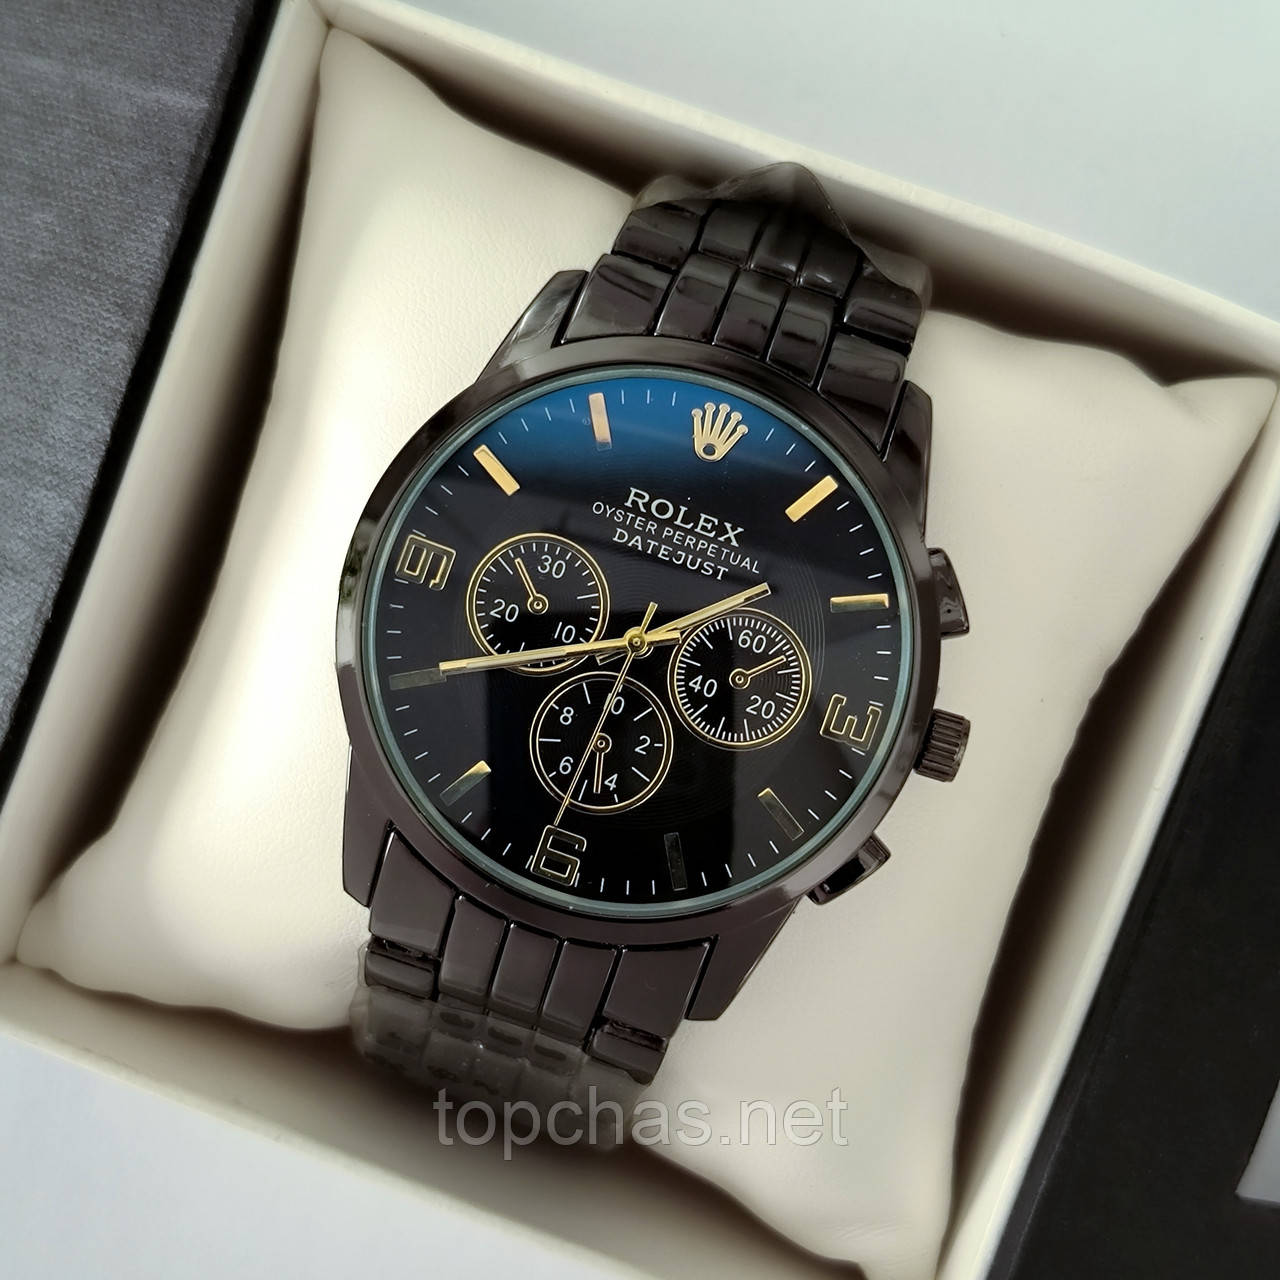 Чоловічий годинник на руку Rolex (ролекс), чорний з золотими елементами, антивідблискове скло - код 2194t